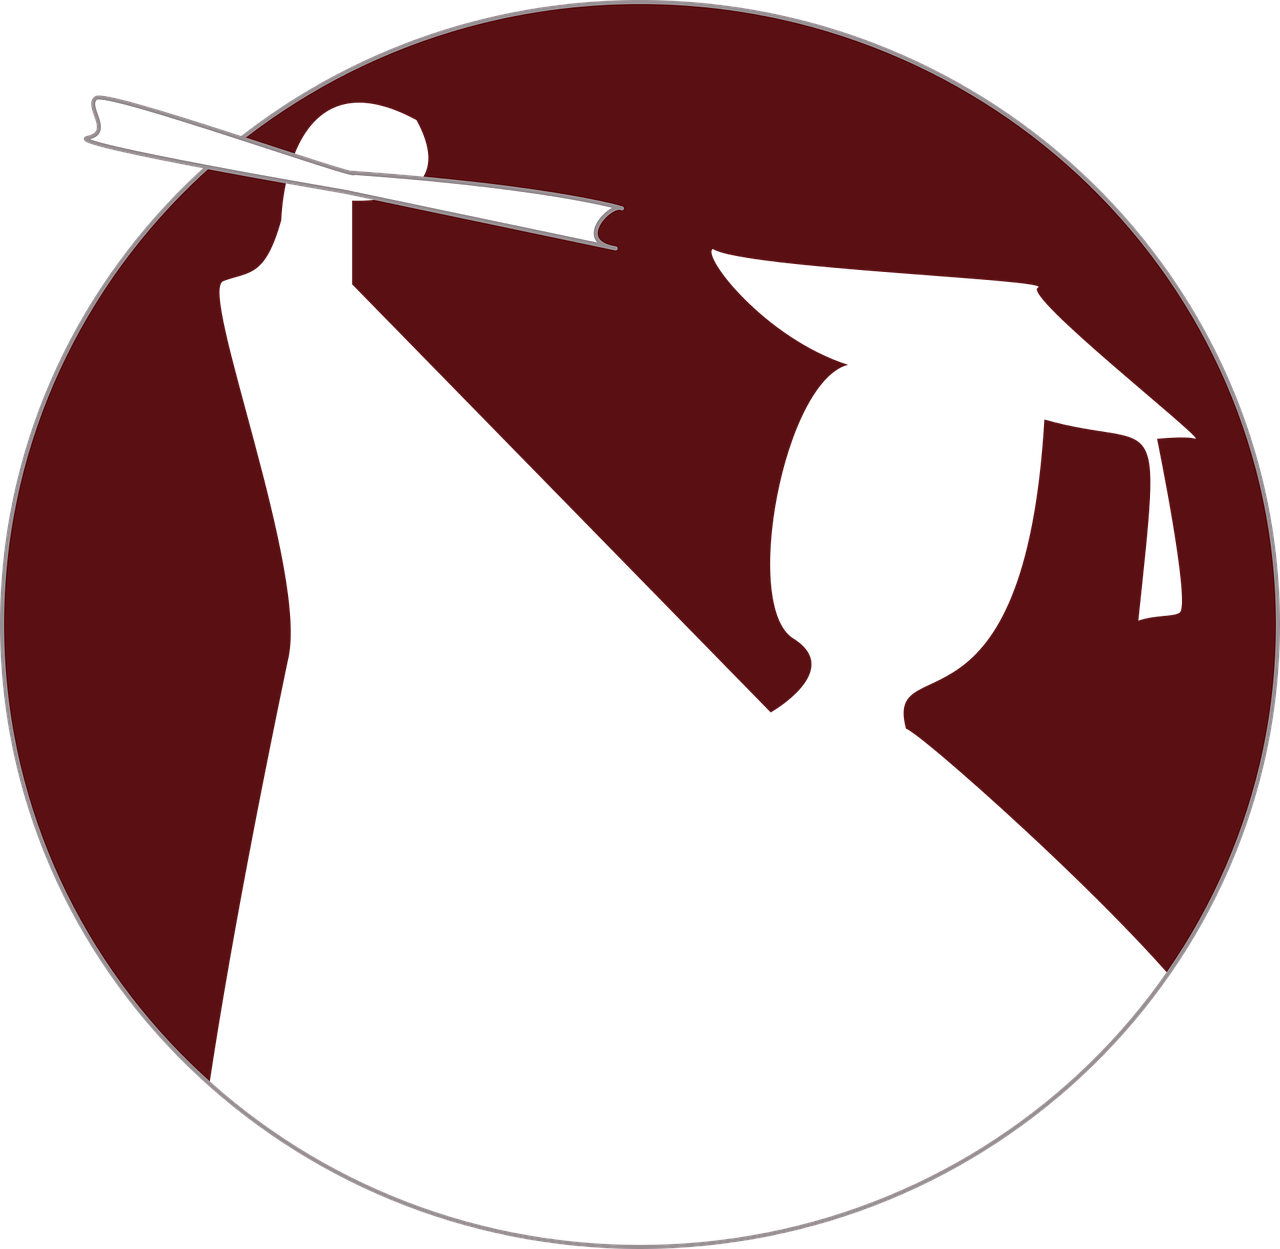 abstracte afbeelding van een afgestudeerde met een diploma in de hand